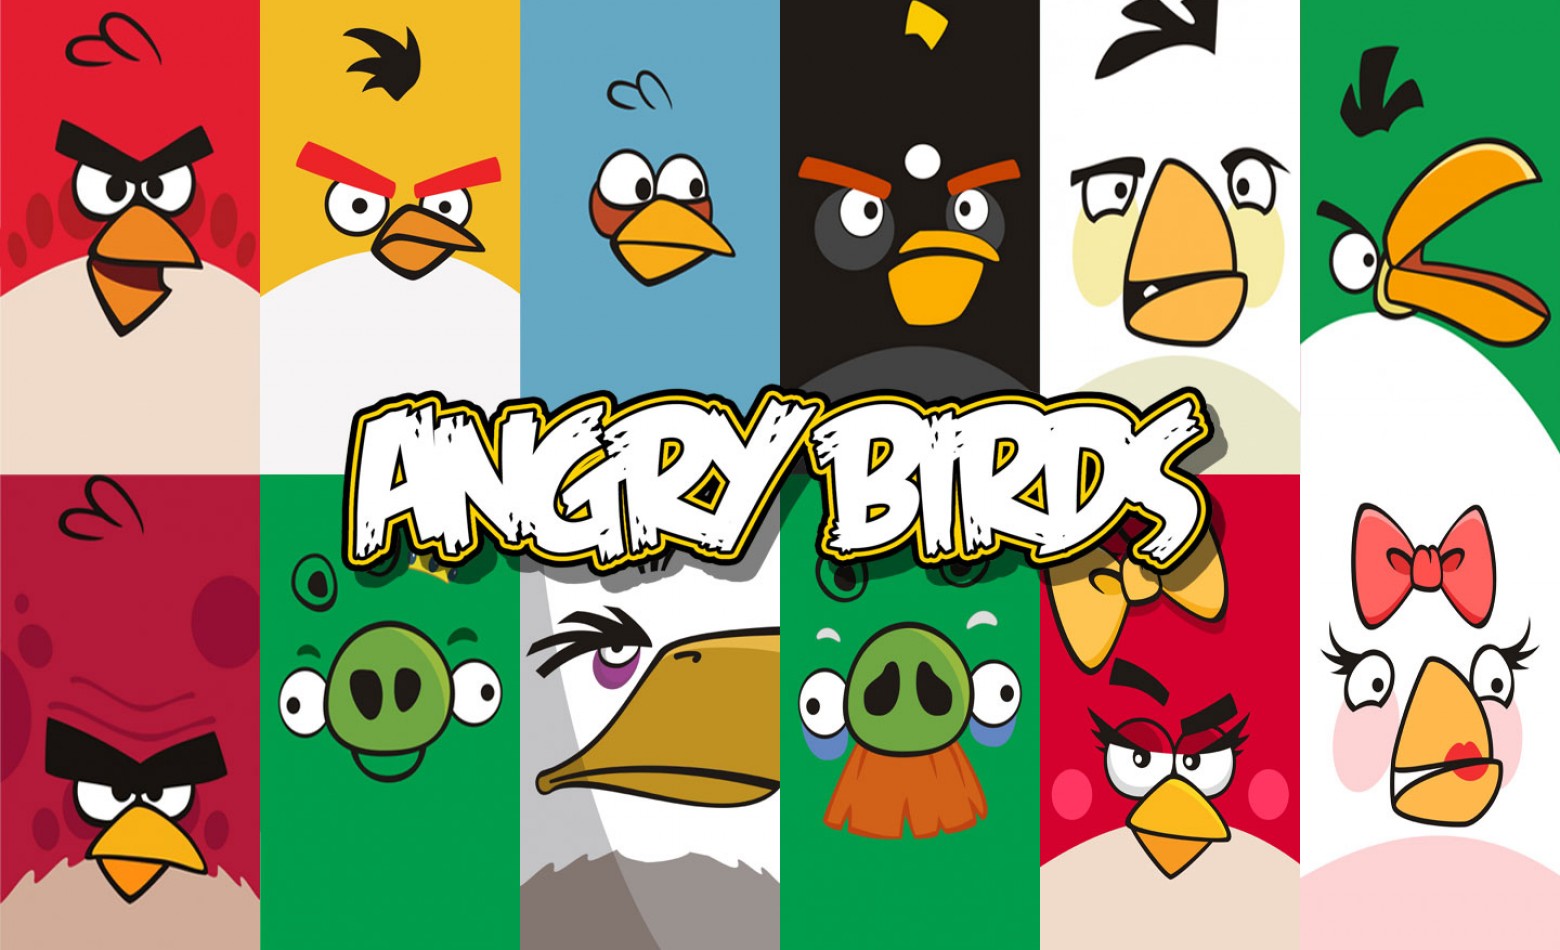 Artista diz ter inventado Angry Birds e está processando a Rovio